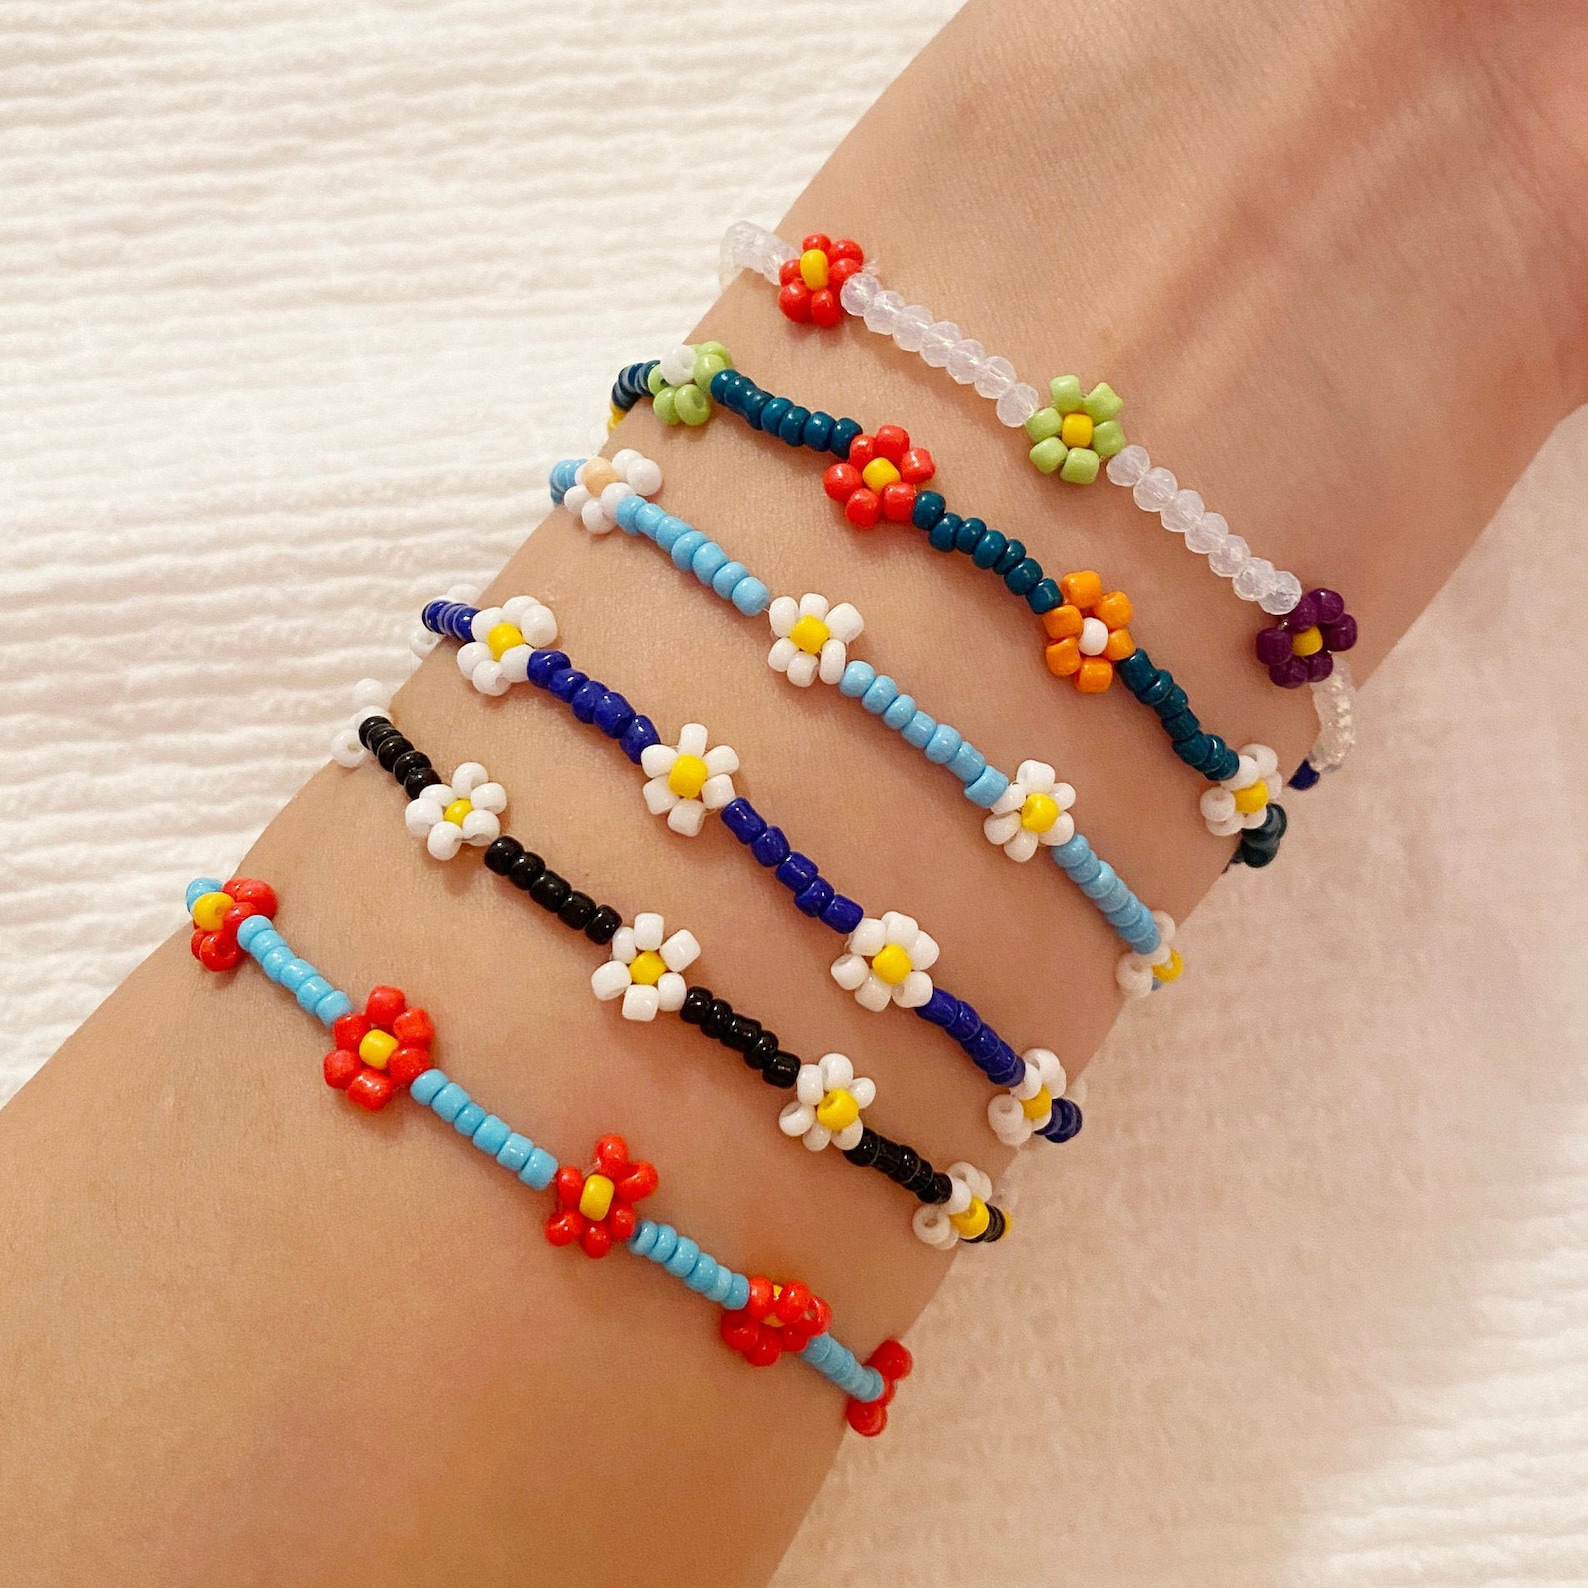 Handmade Daisy Flower Beads Bracelet & Anklet / Beads Bracelet | Etsy